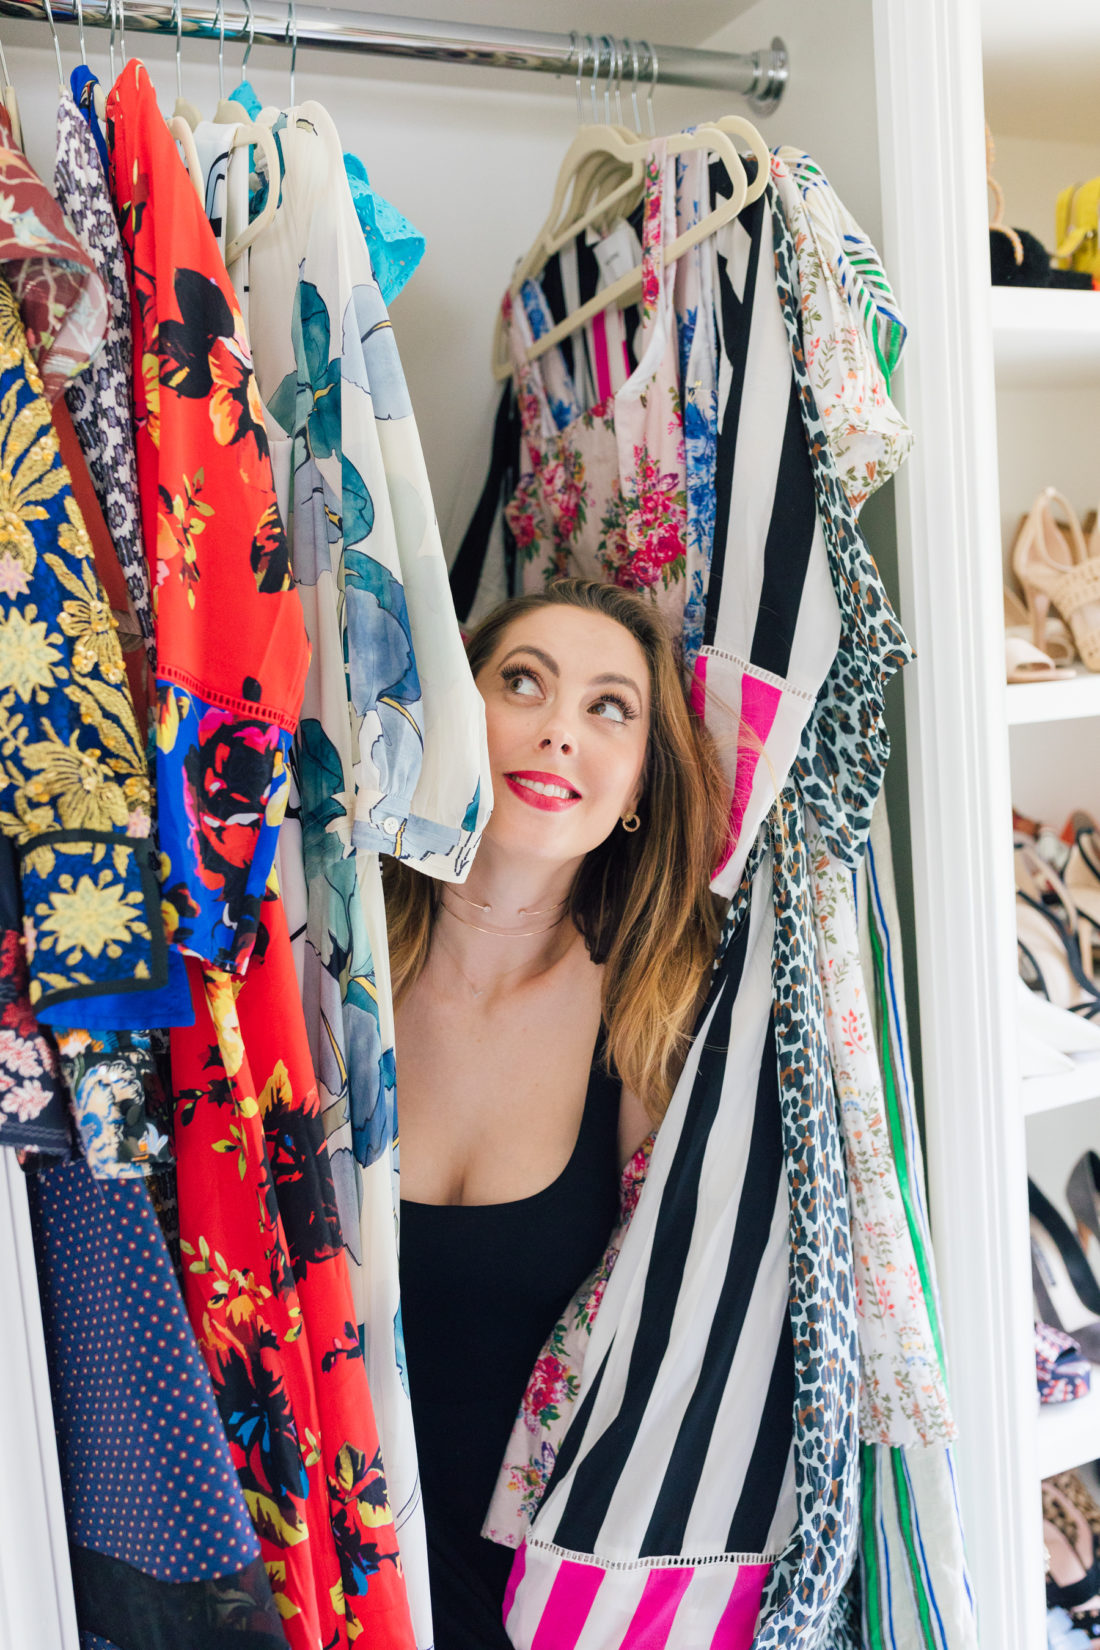 Eva Amurri Martino pops out of her colorful closet